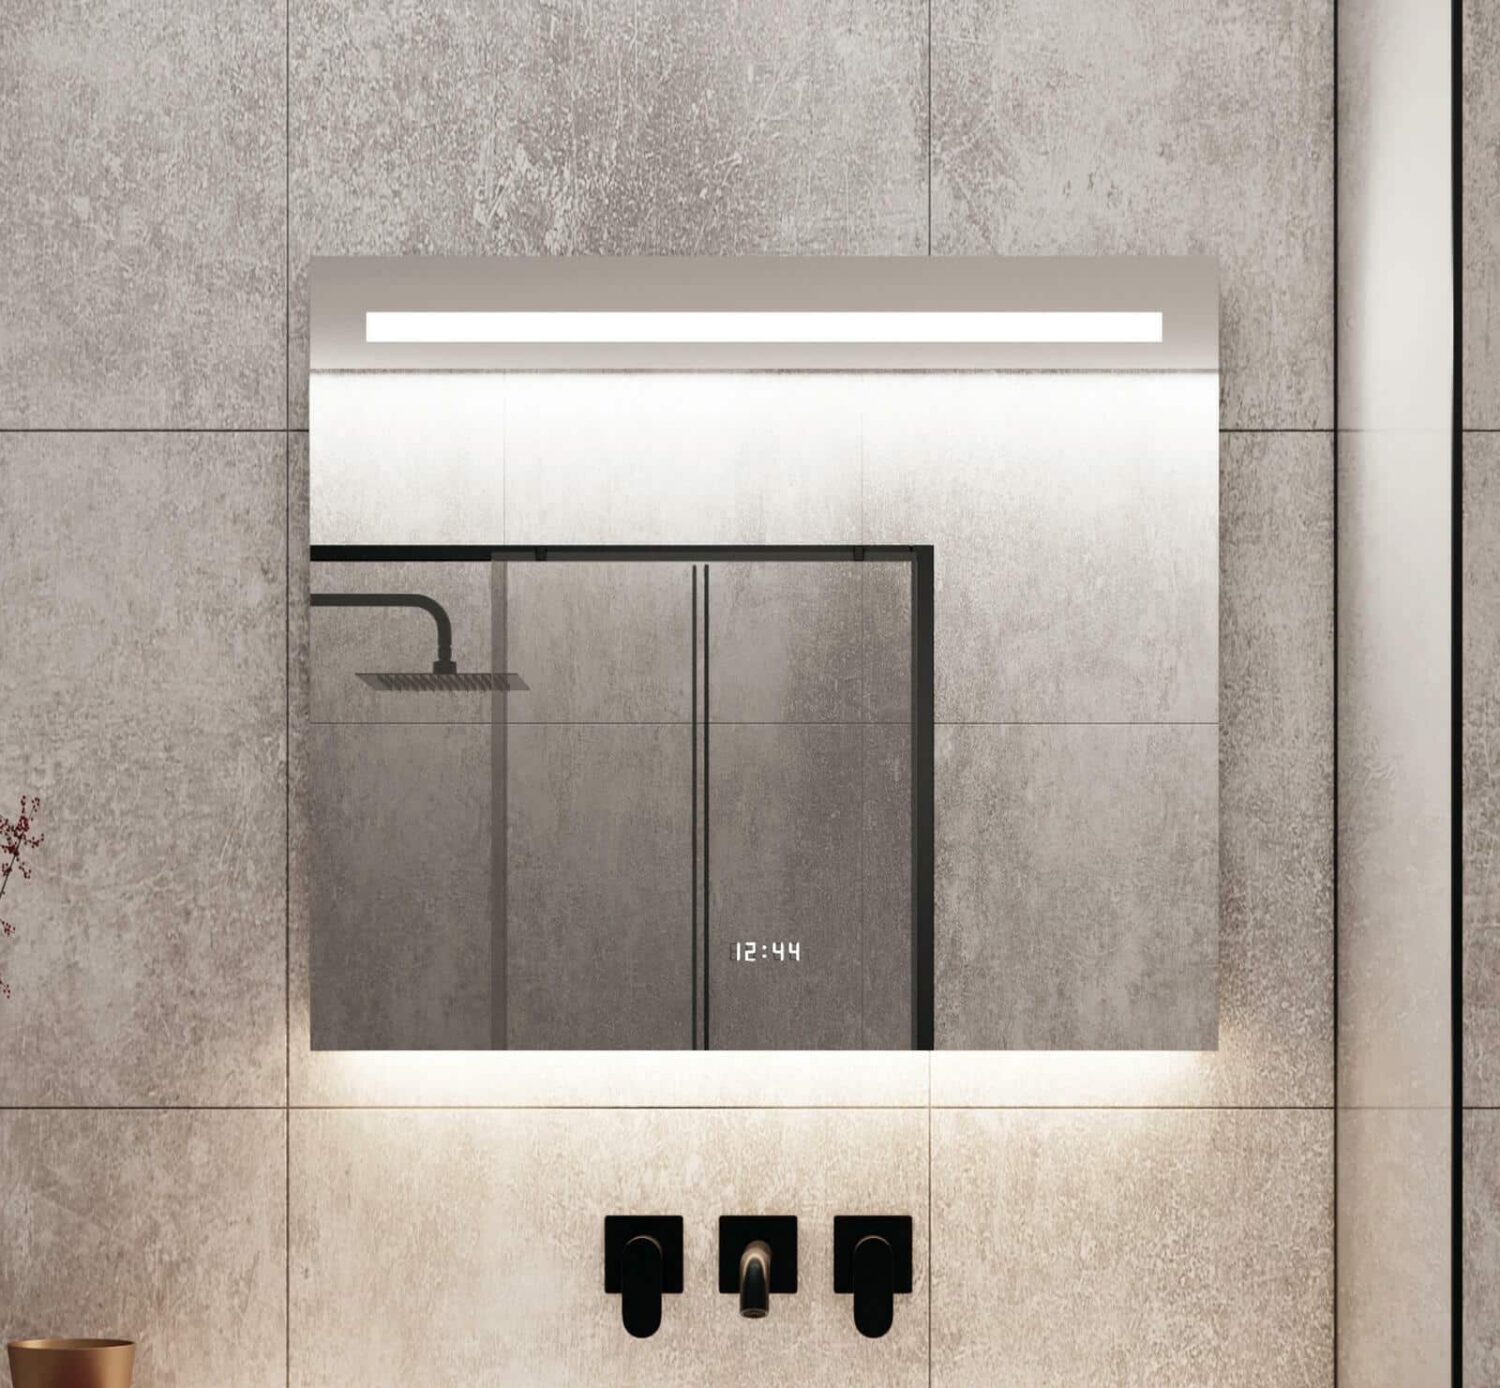 Badkamer spiegel met klok en verlichting op grijze tegel